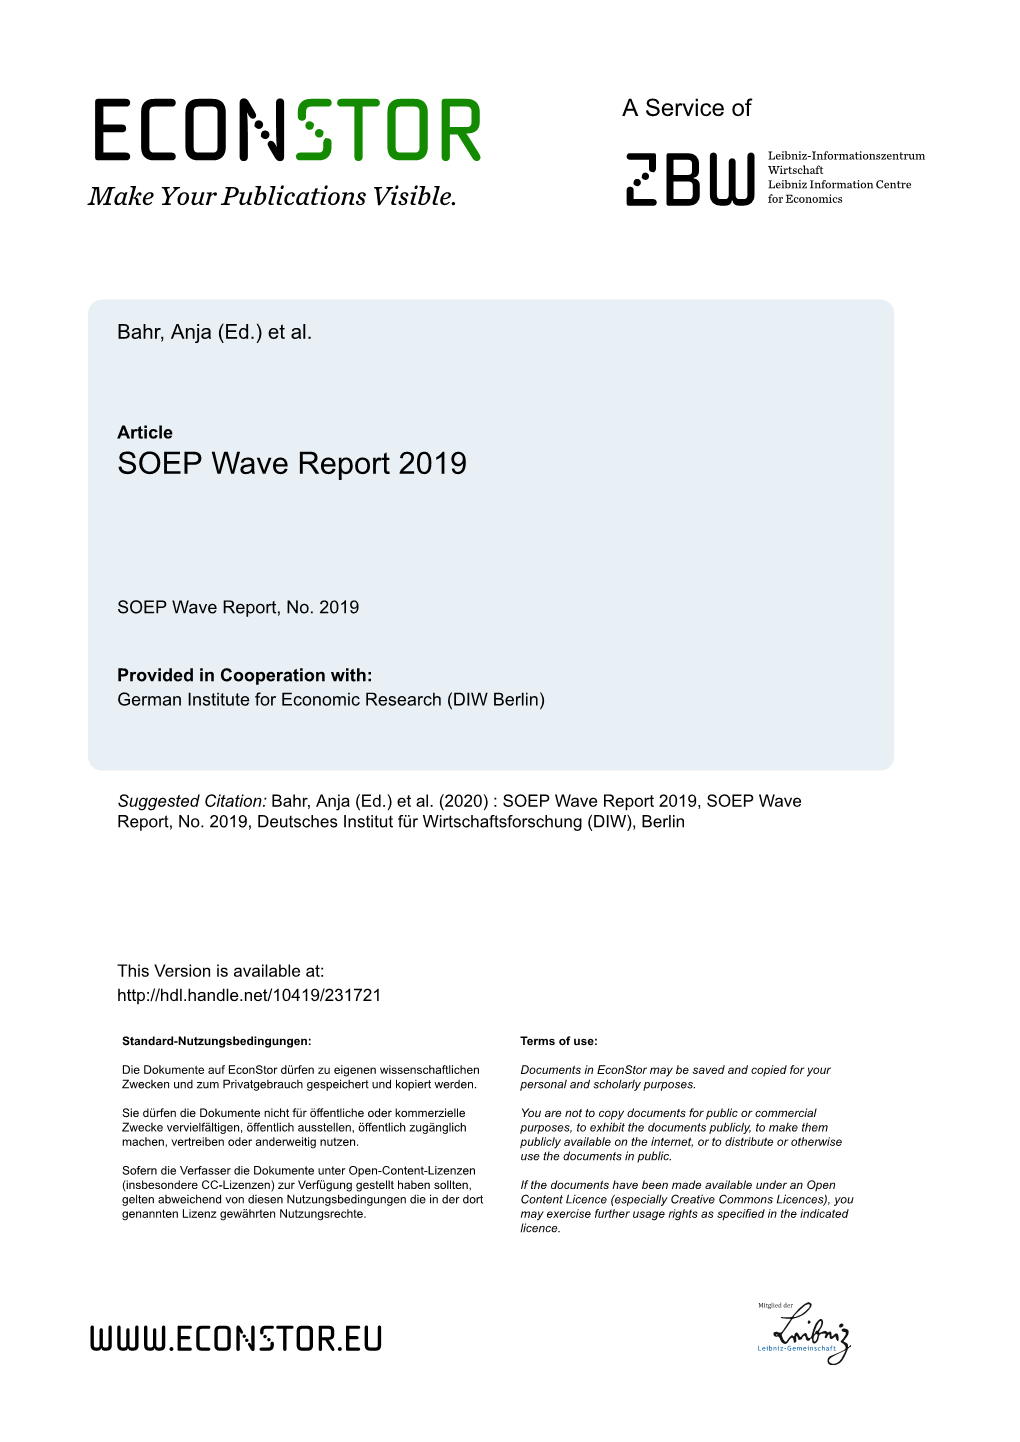 SOEP Annual Report 2019, June 2020